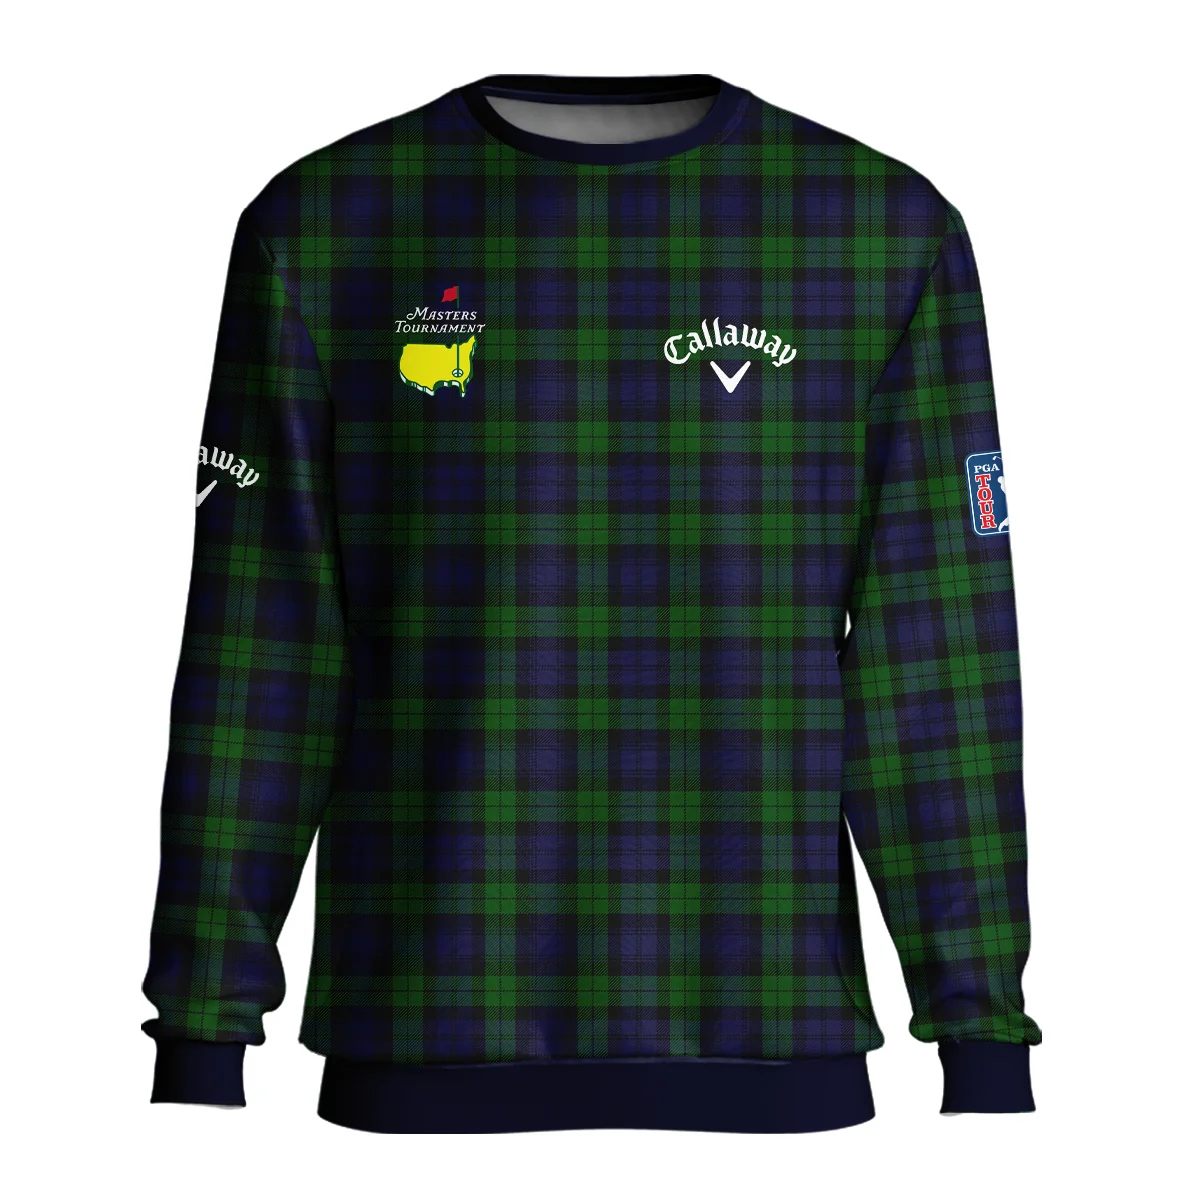 Masters Tournament Callaway Golf Zipper Hoodie Shirt Sports Green Purple Black Watch Tartan Plaid All Over Print Zipper Hoodie Shirt